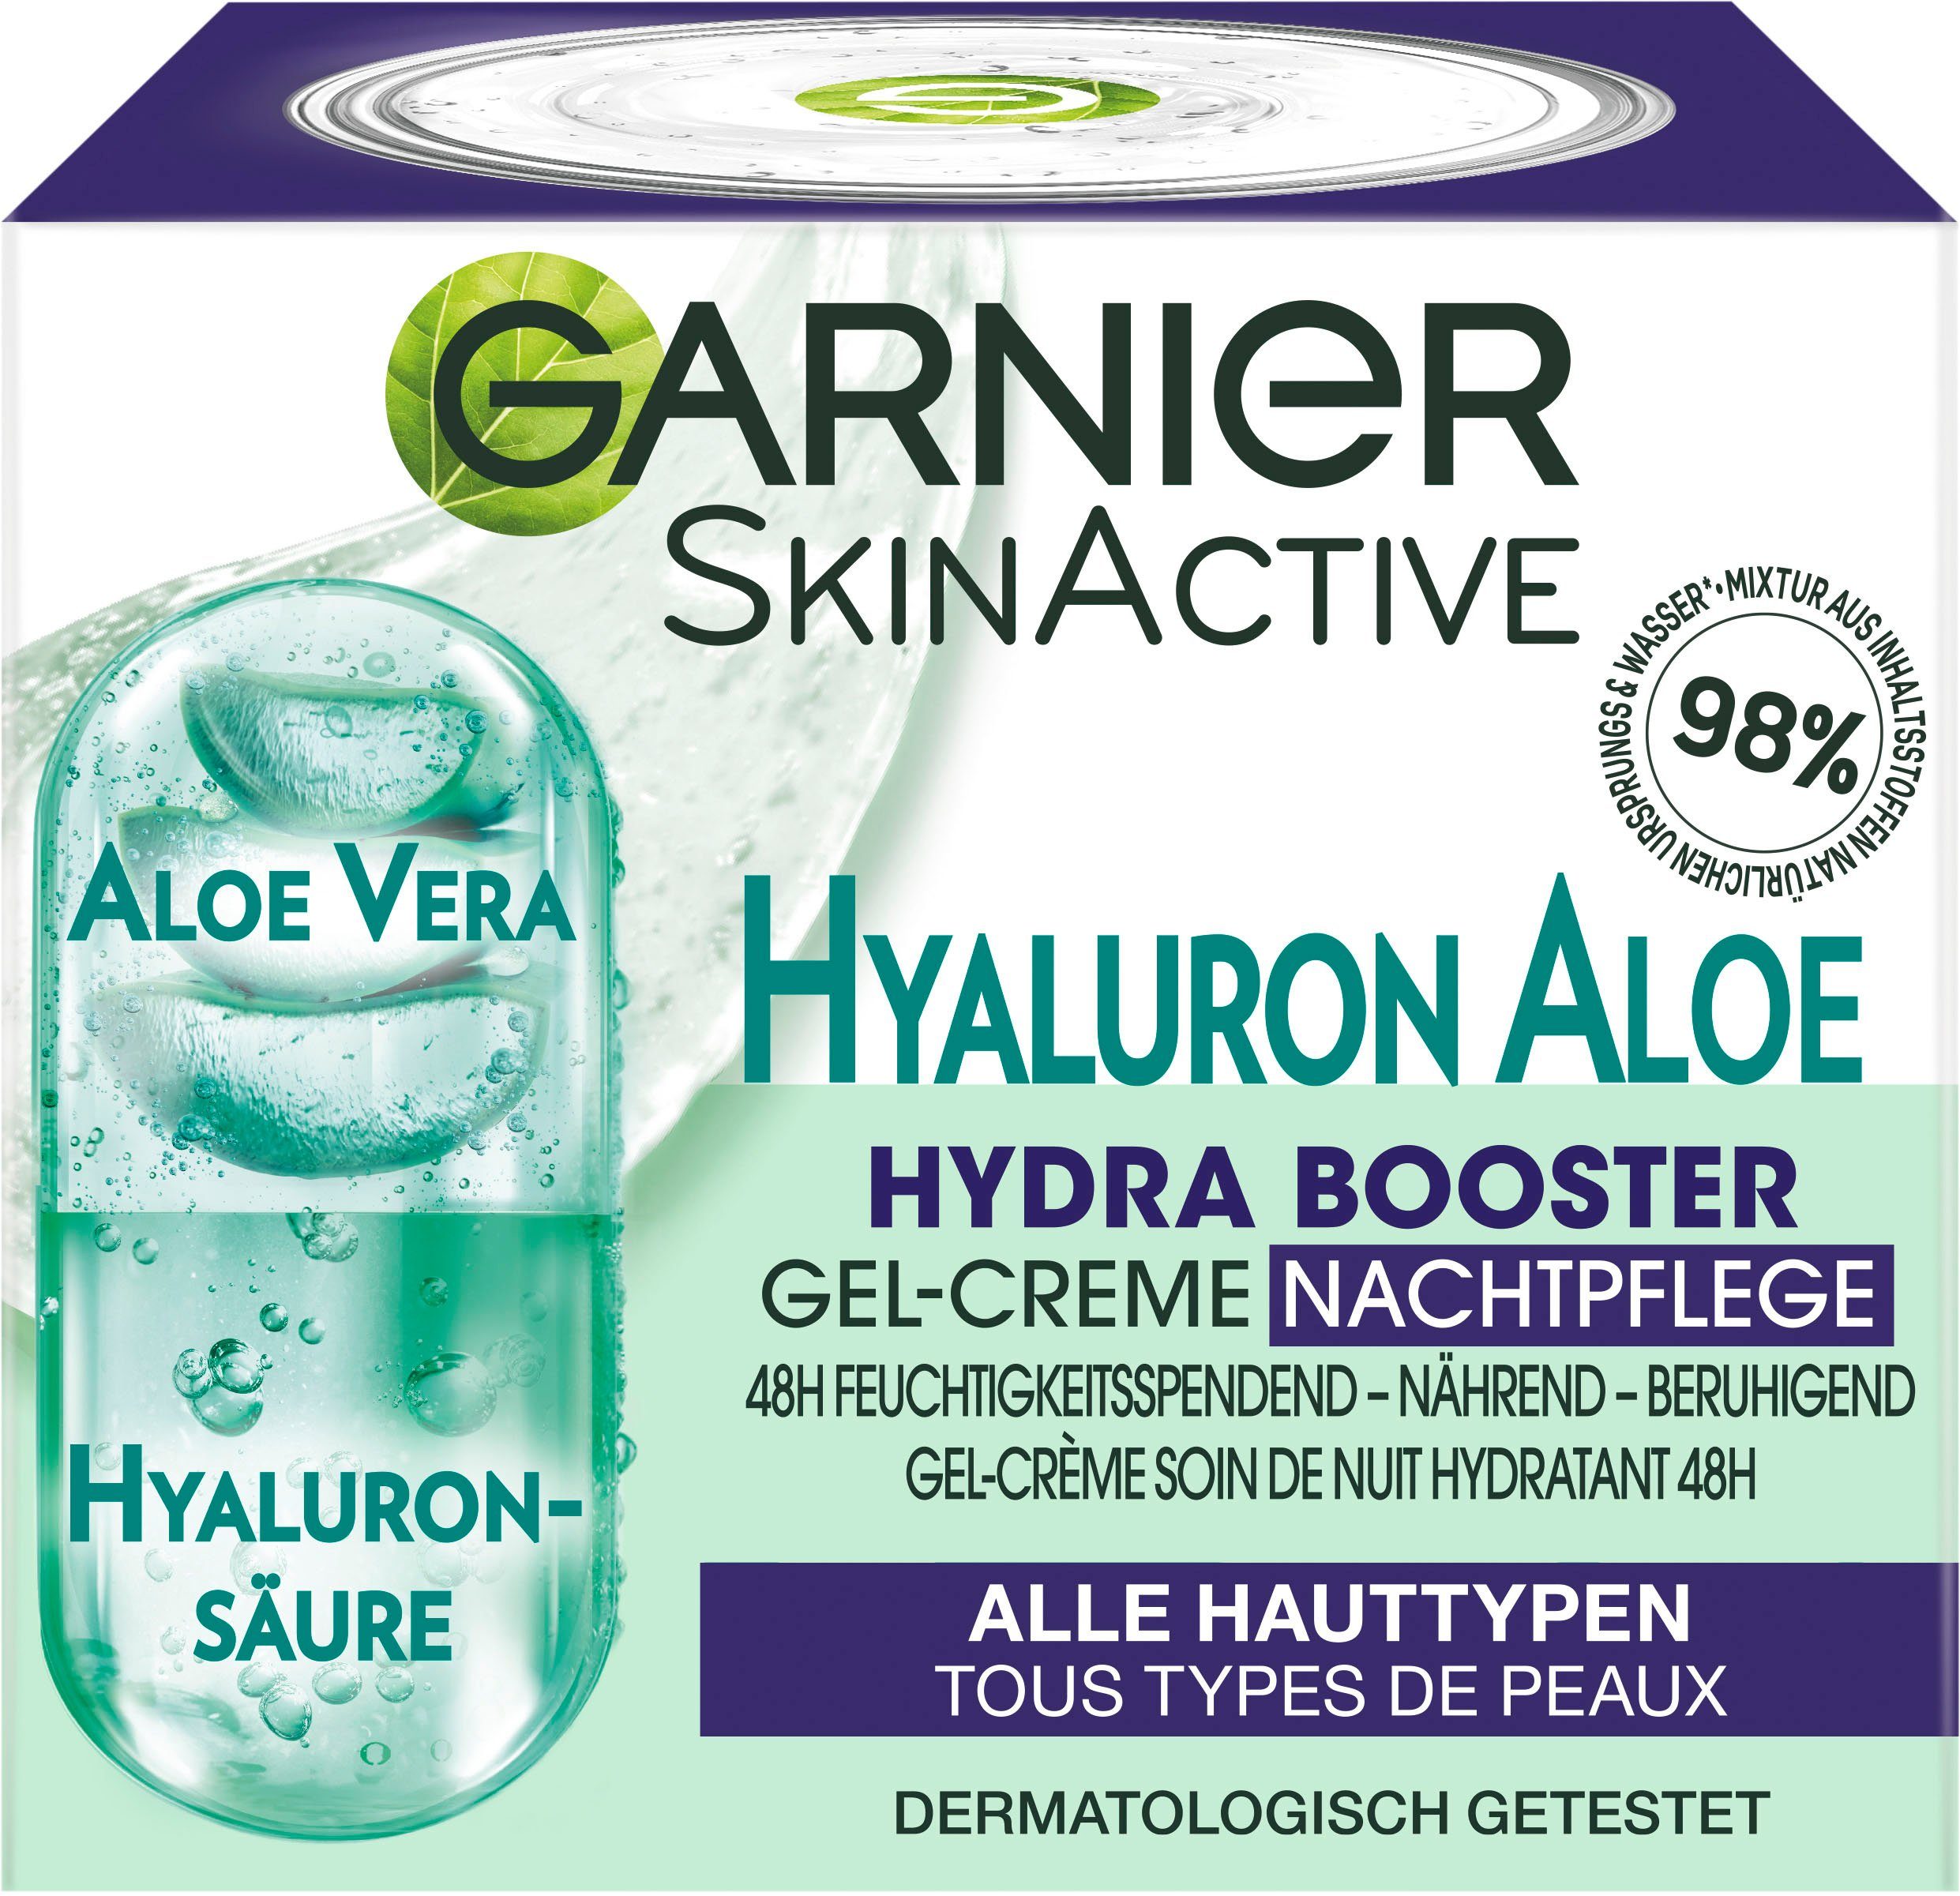 Garnier mit Booster Hyaluron Nachtpflege, Hyaluron GARNIER Nachtcreme Aloe